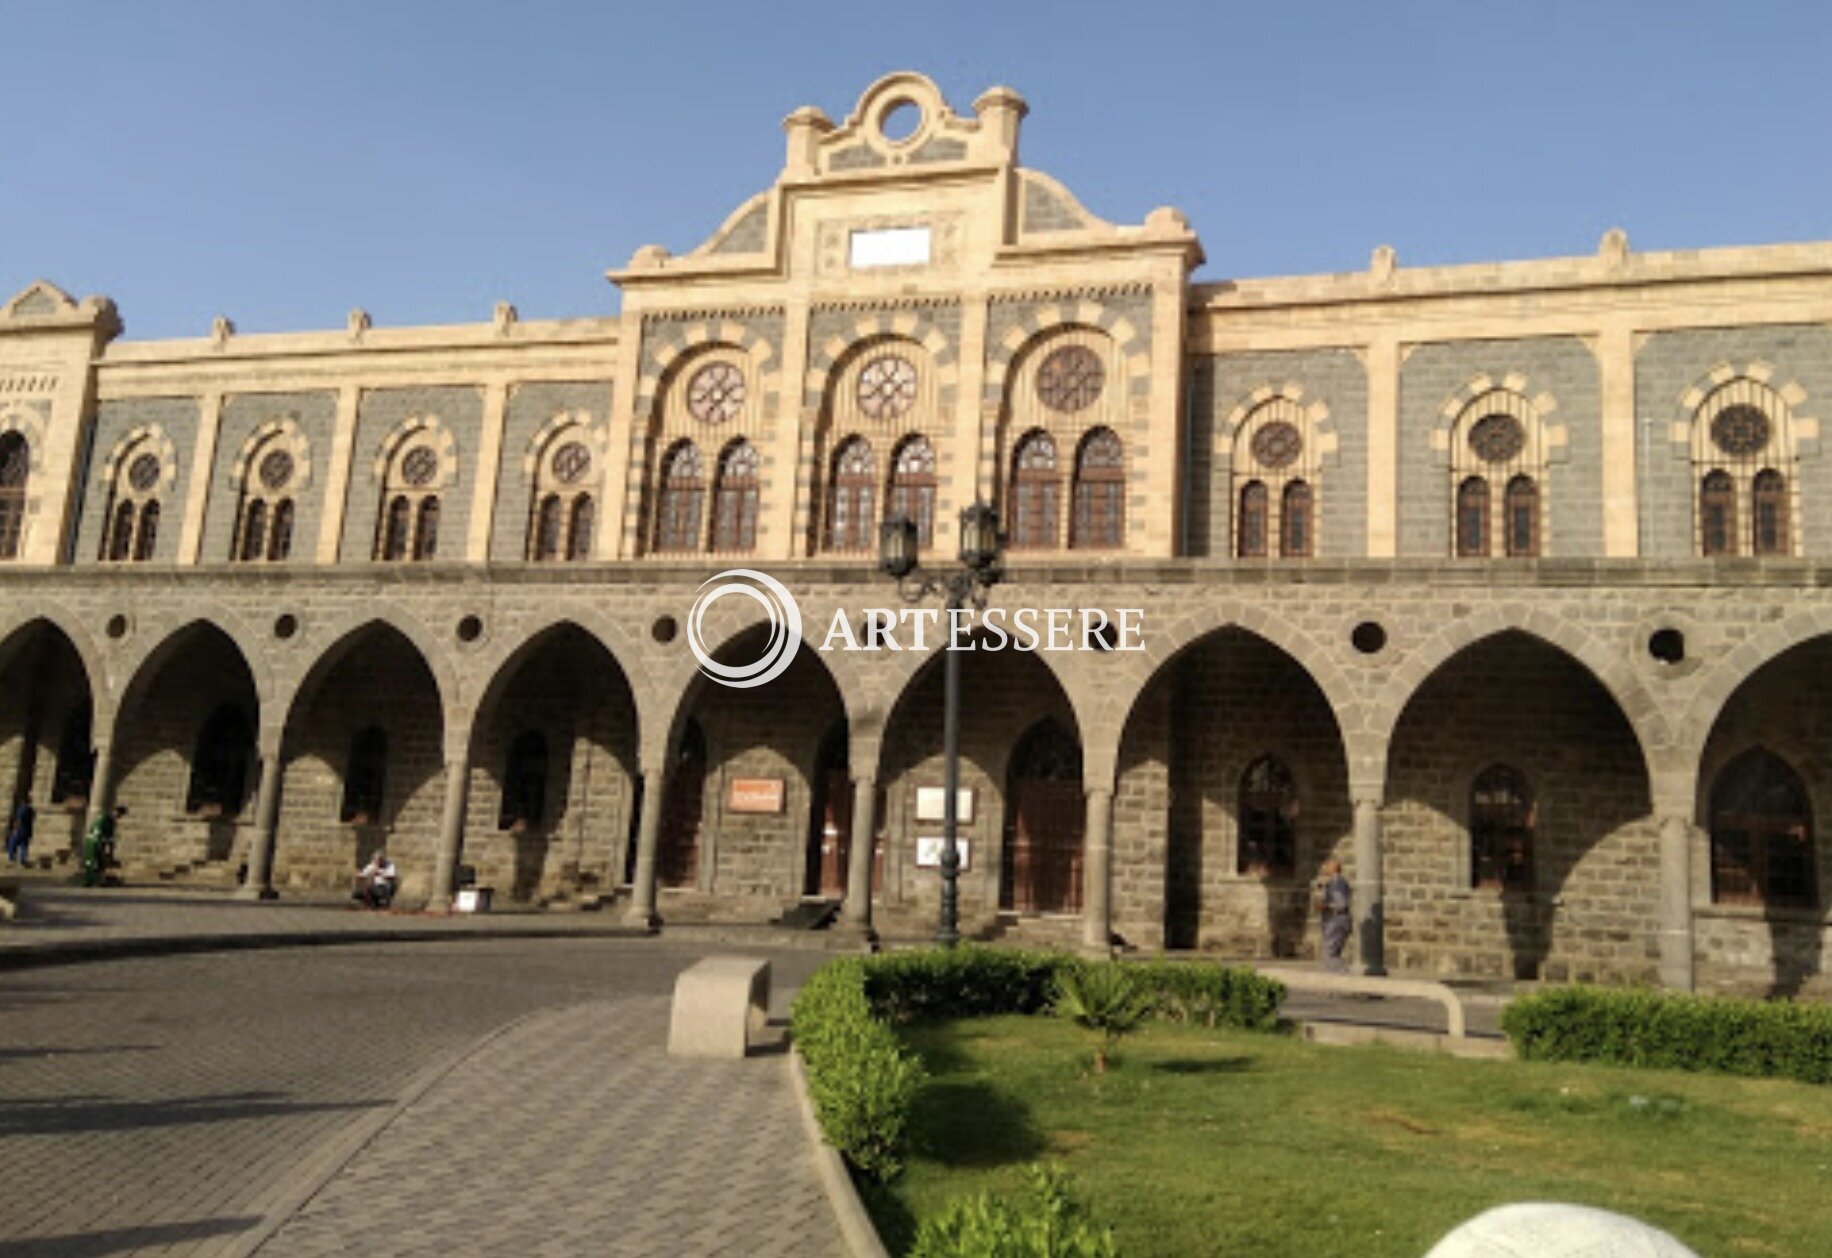 Hejaz Railway Museum